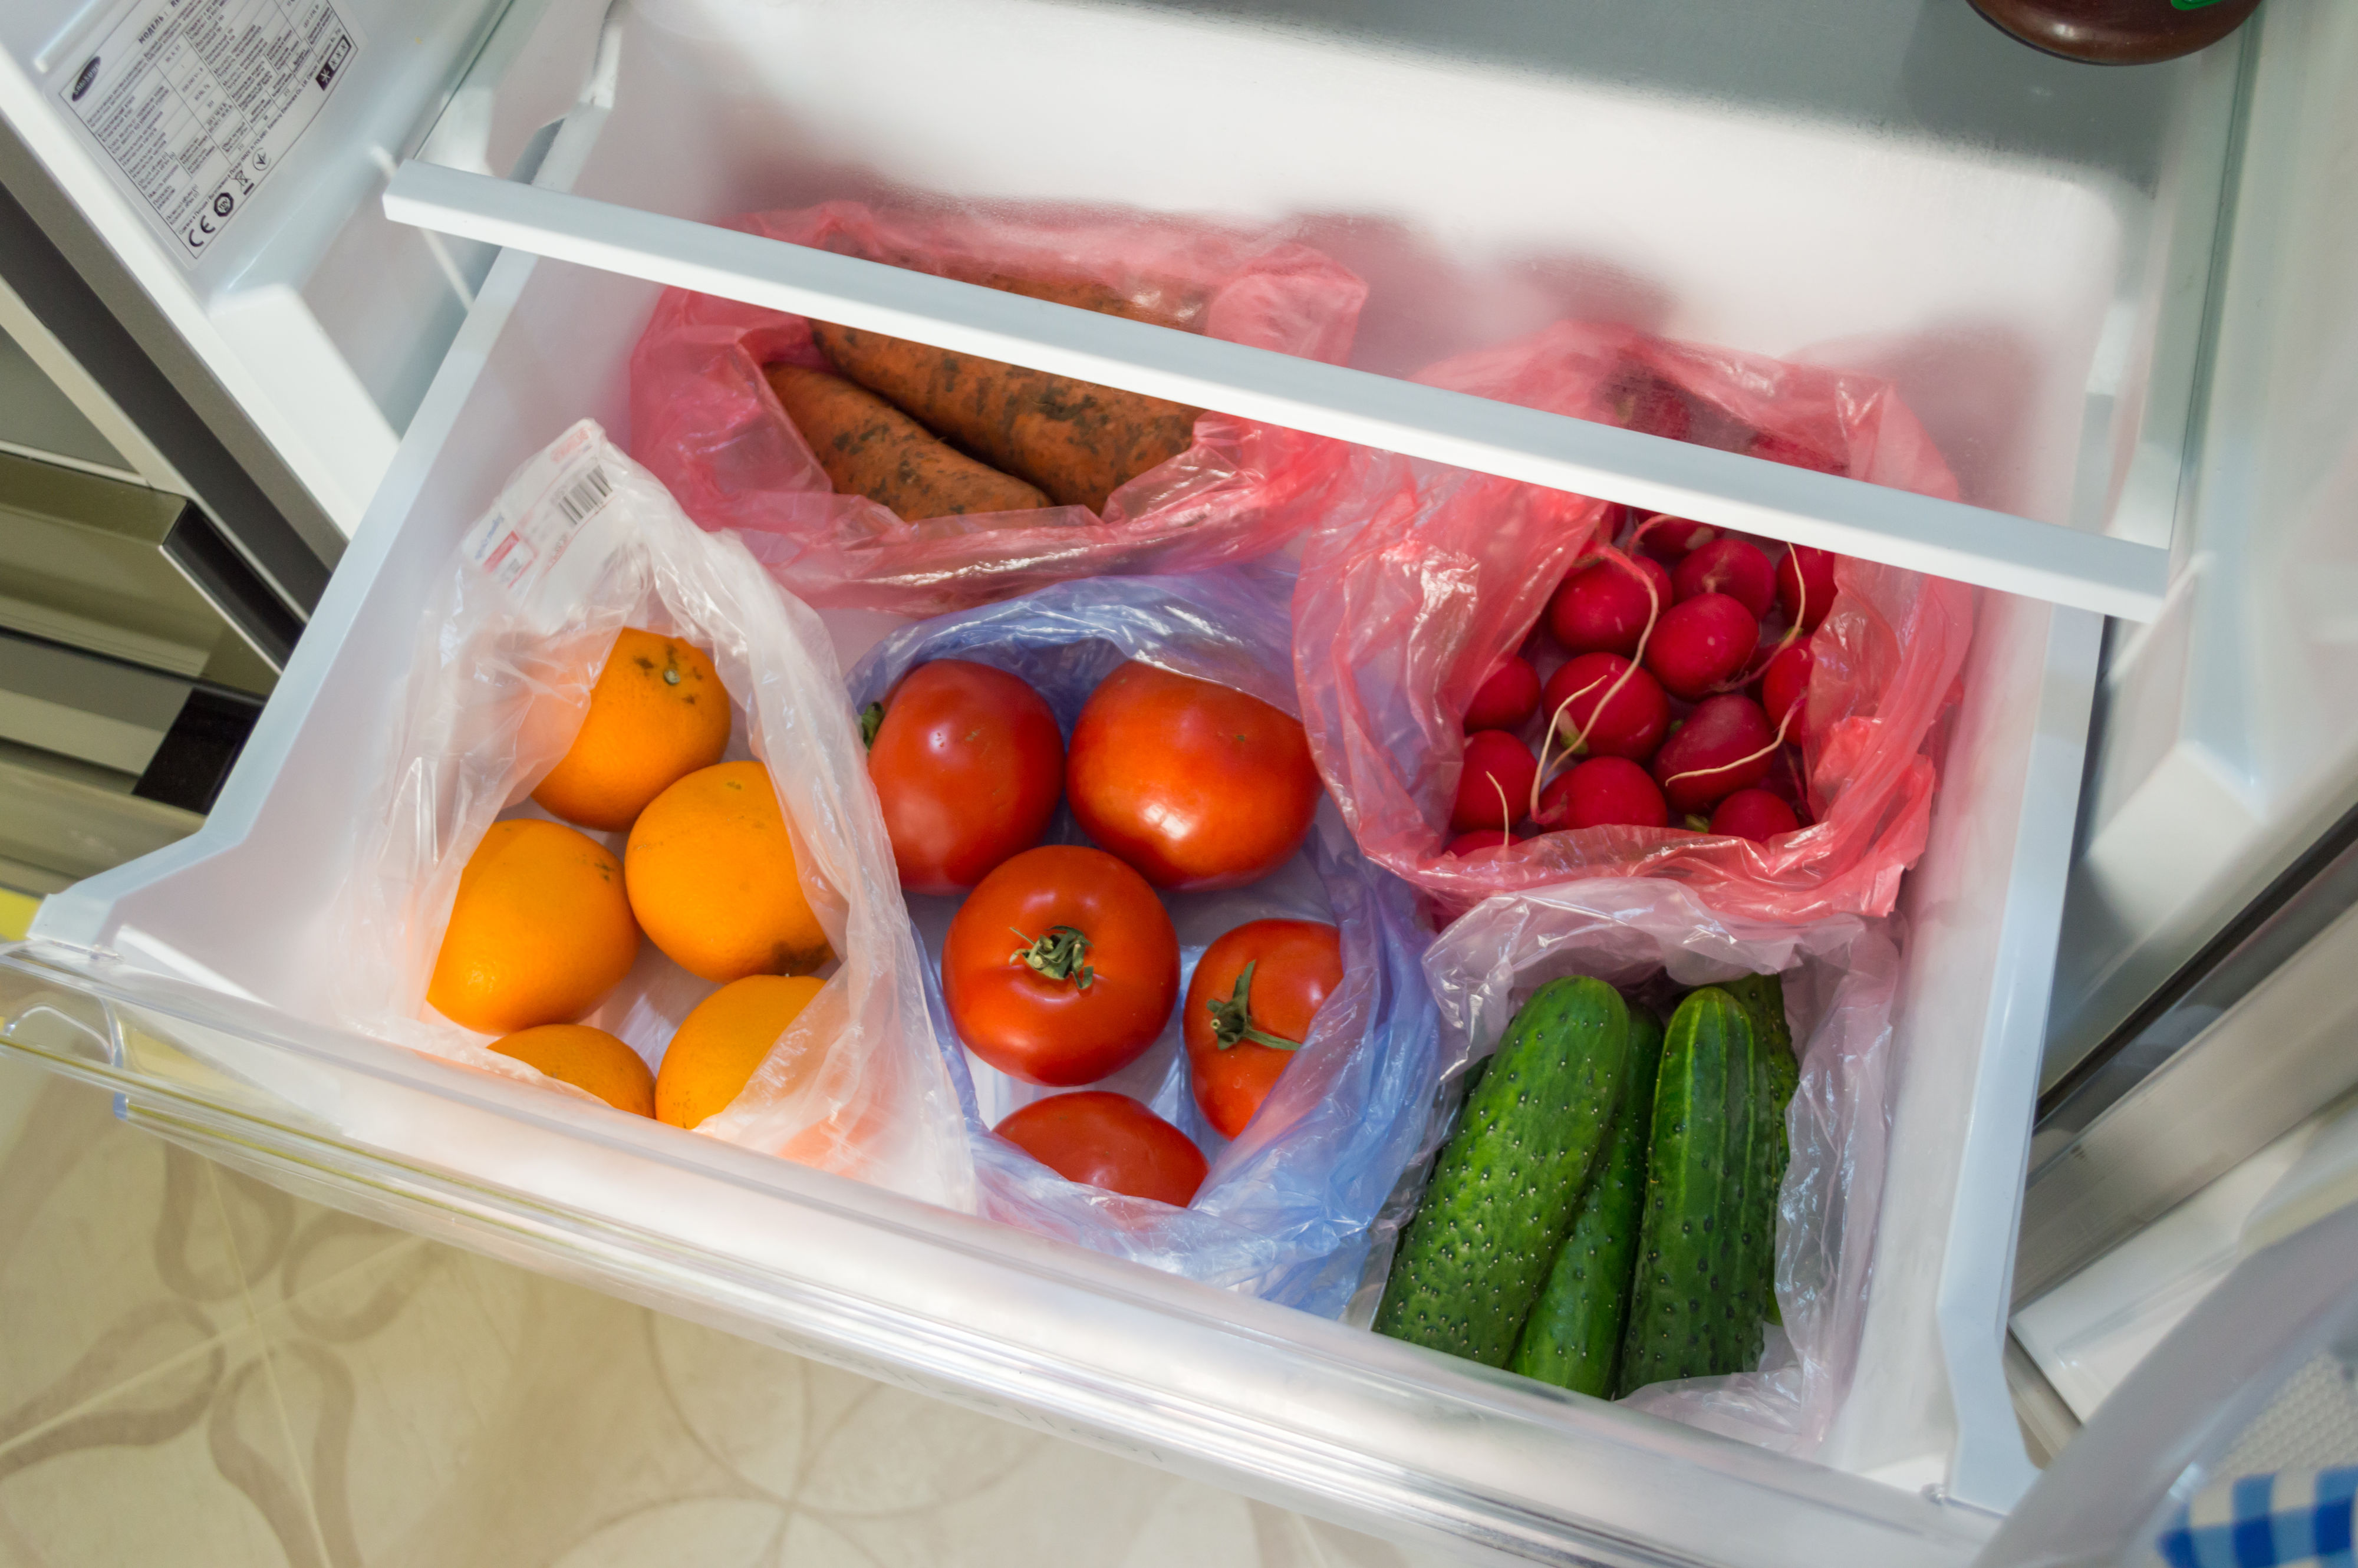 Как правильно хранить свежую зелень в холодильнике? как и сколько хранить зеленый лук, петрушку, свежую мяту, шпинат, базилик, укроп в холодильнике?